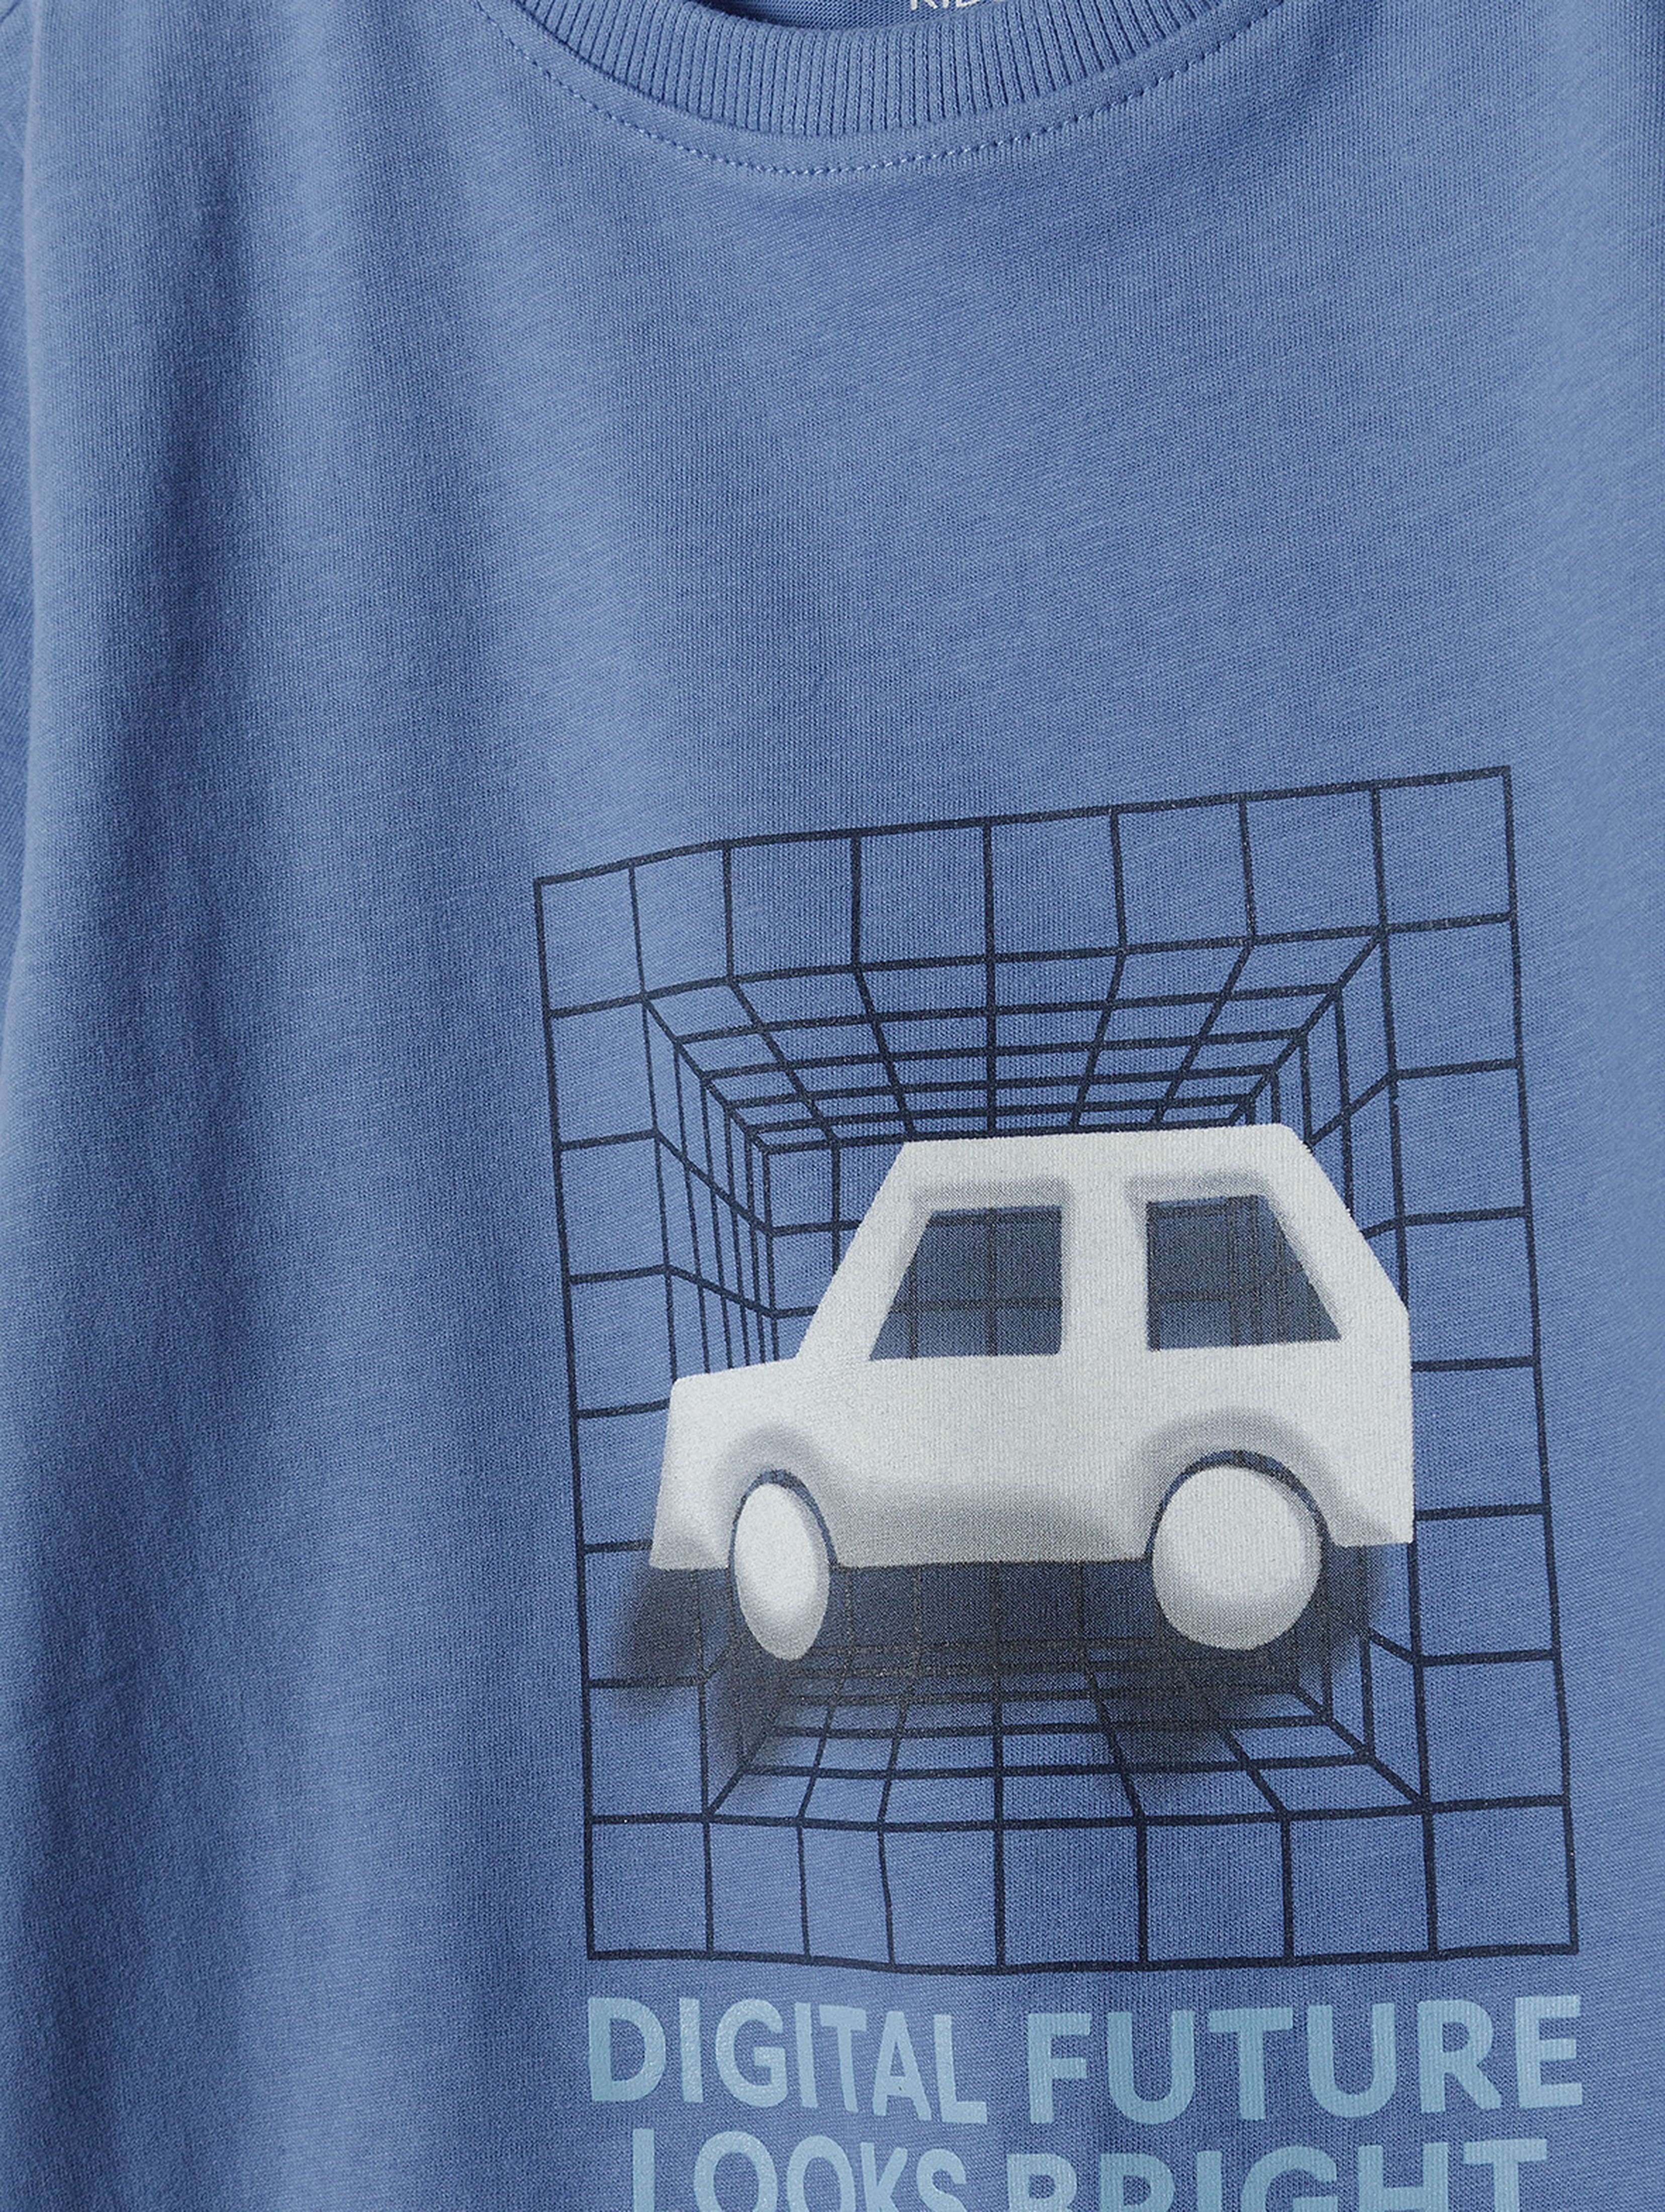 Niebieski t-shirt z bawełny dla chłopca - auto - 5.10.15.